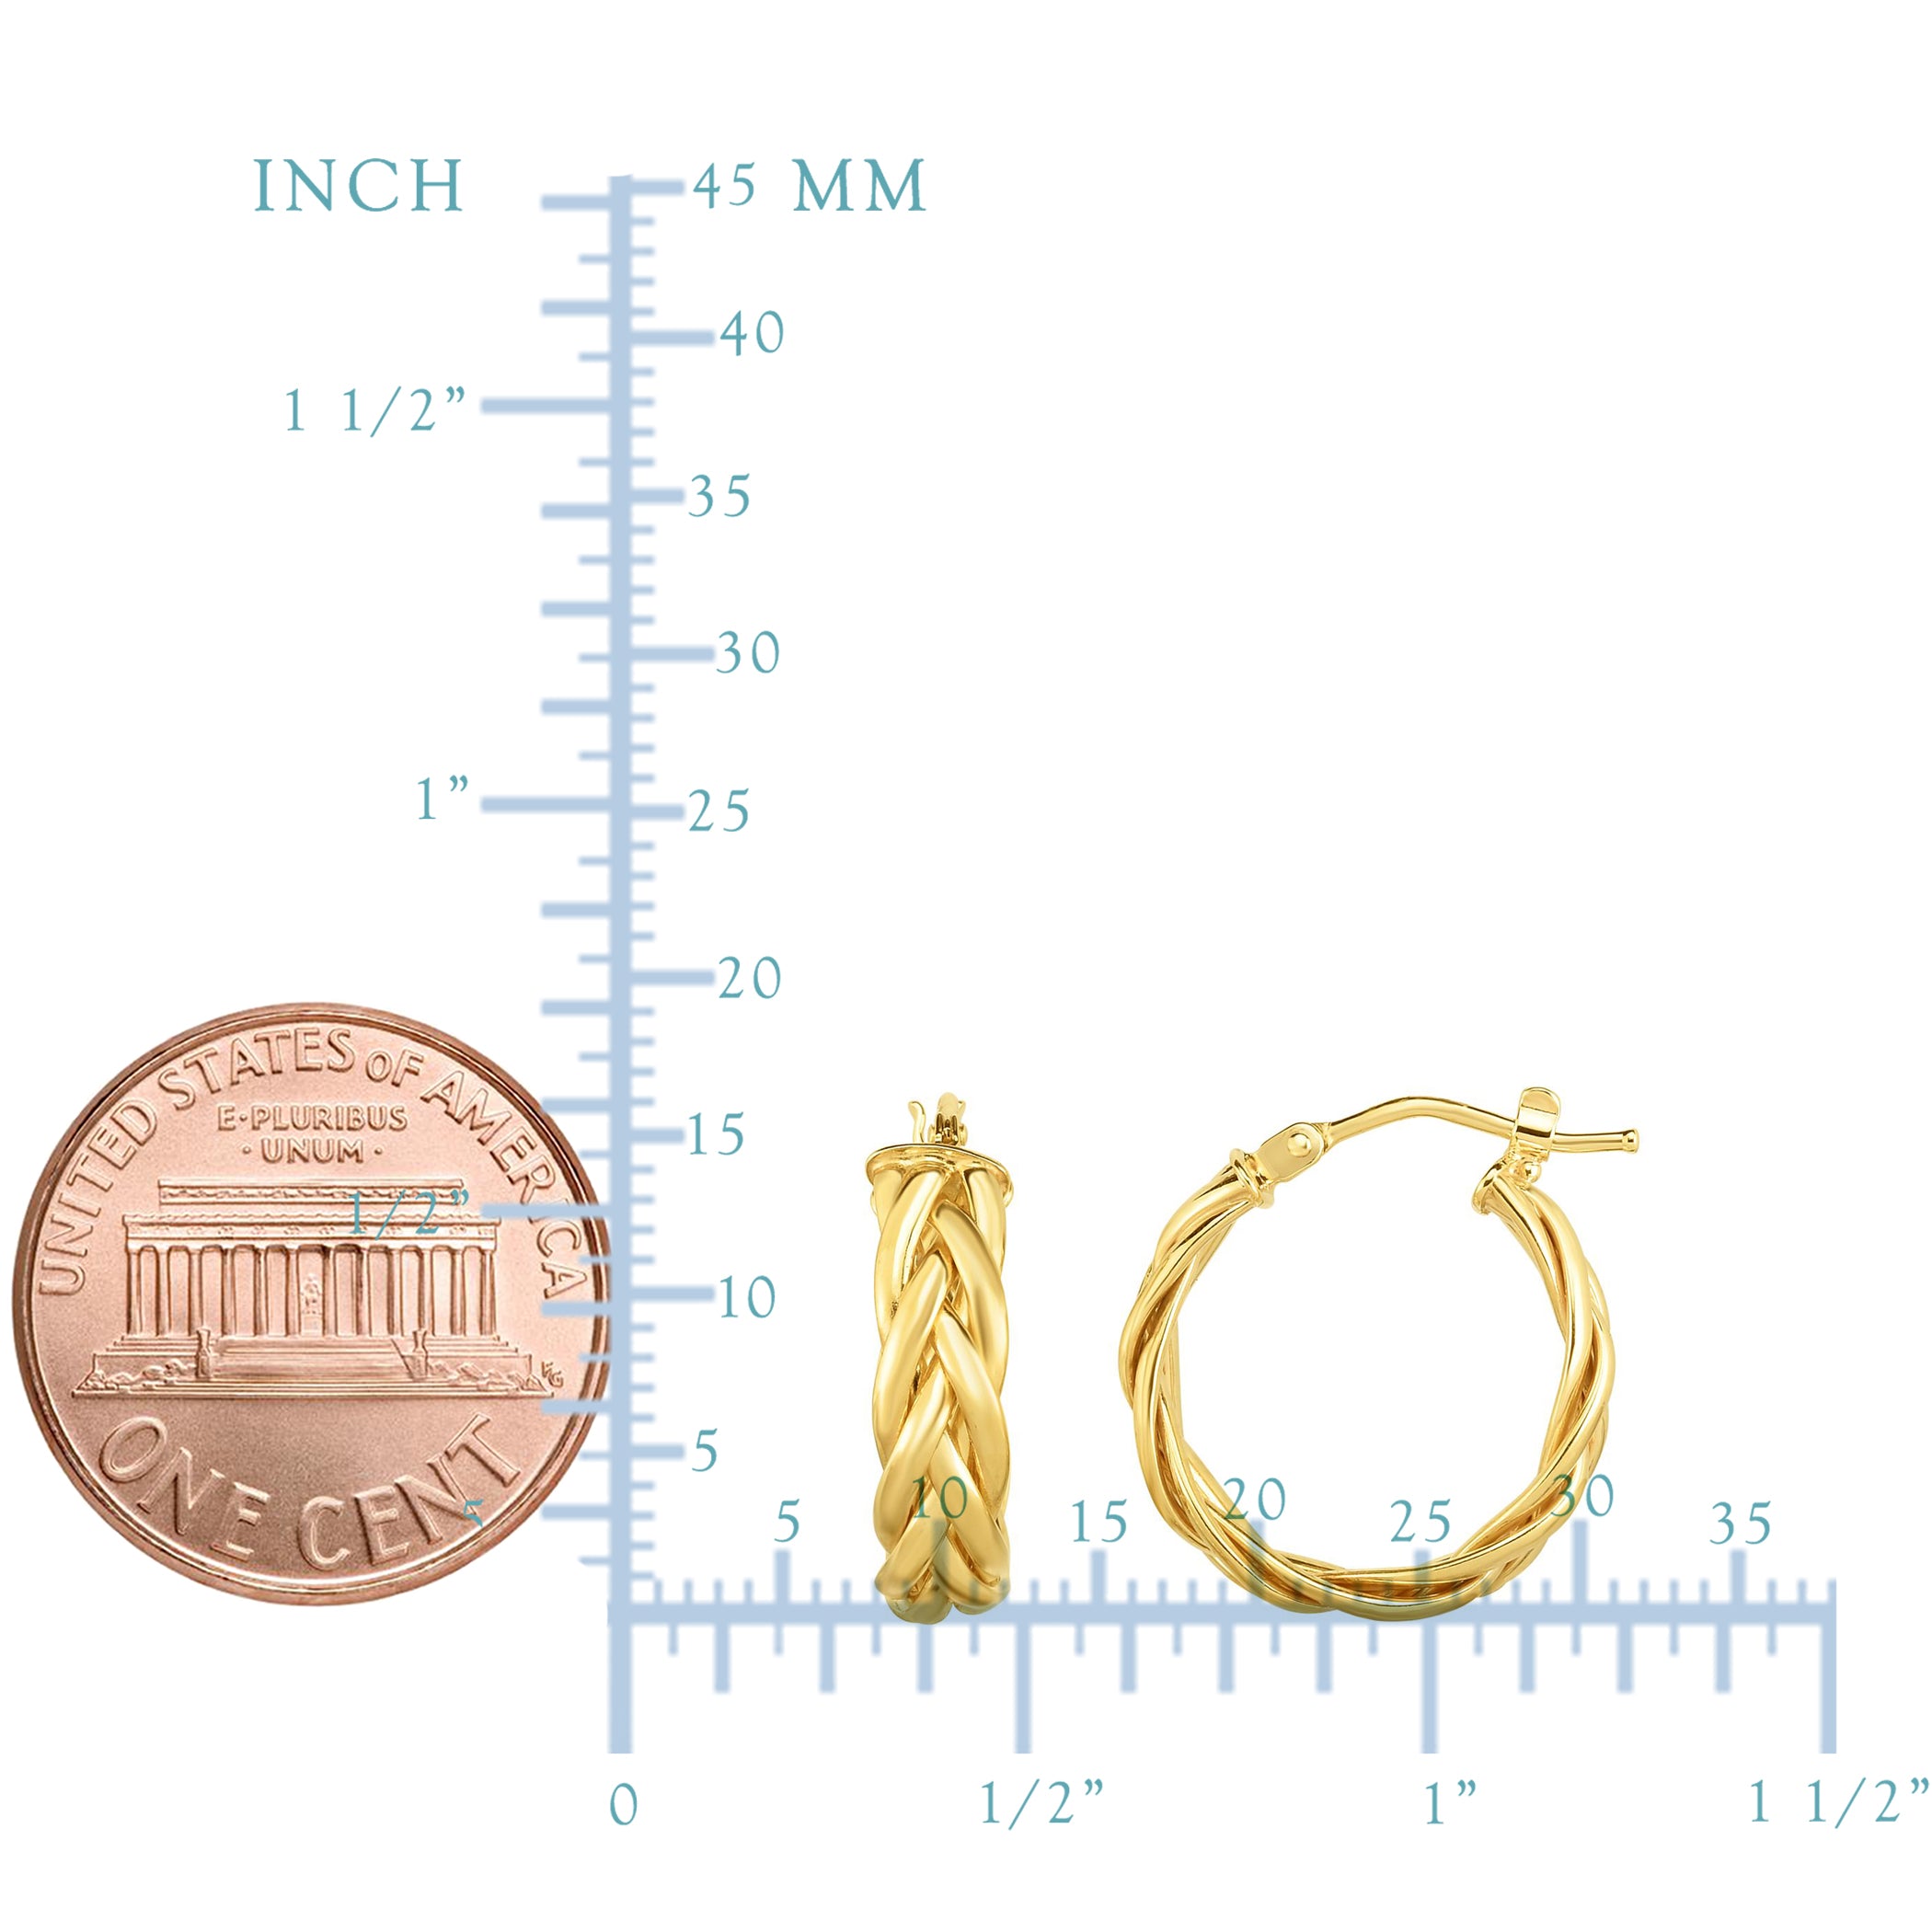 14K Gold Yellow Finish Hoop Fancy Earrings, Diameter 15mm